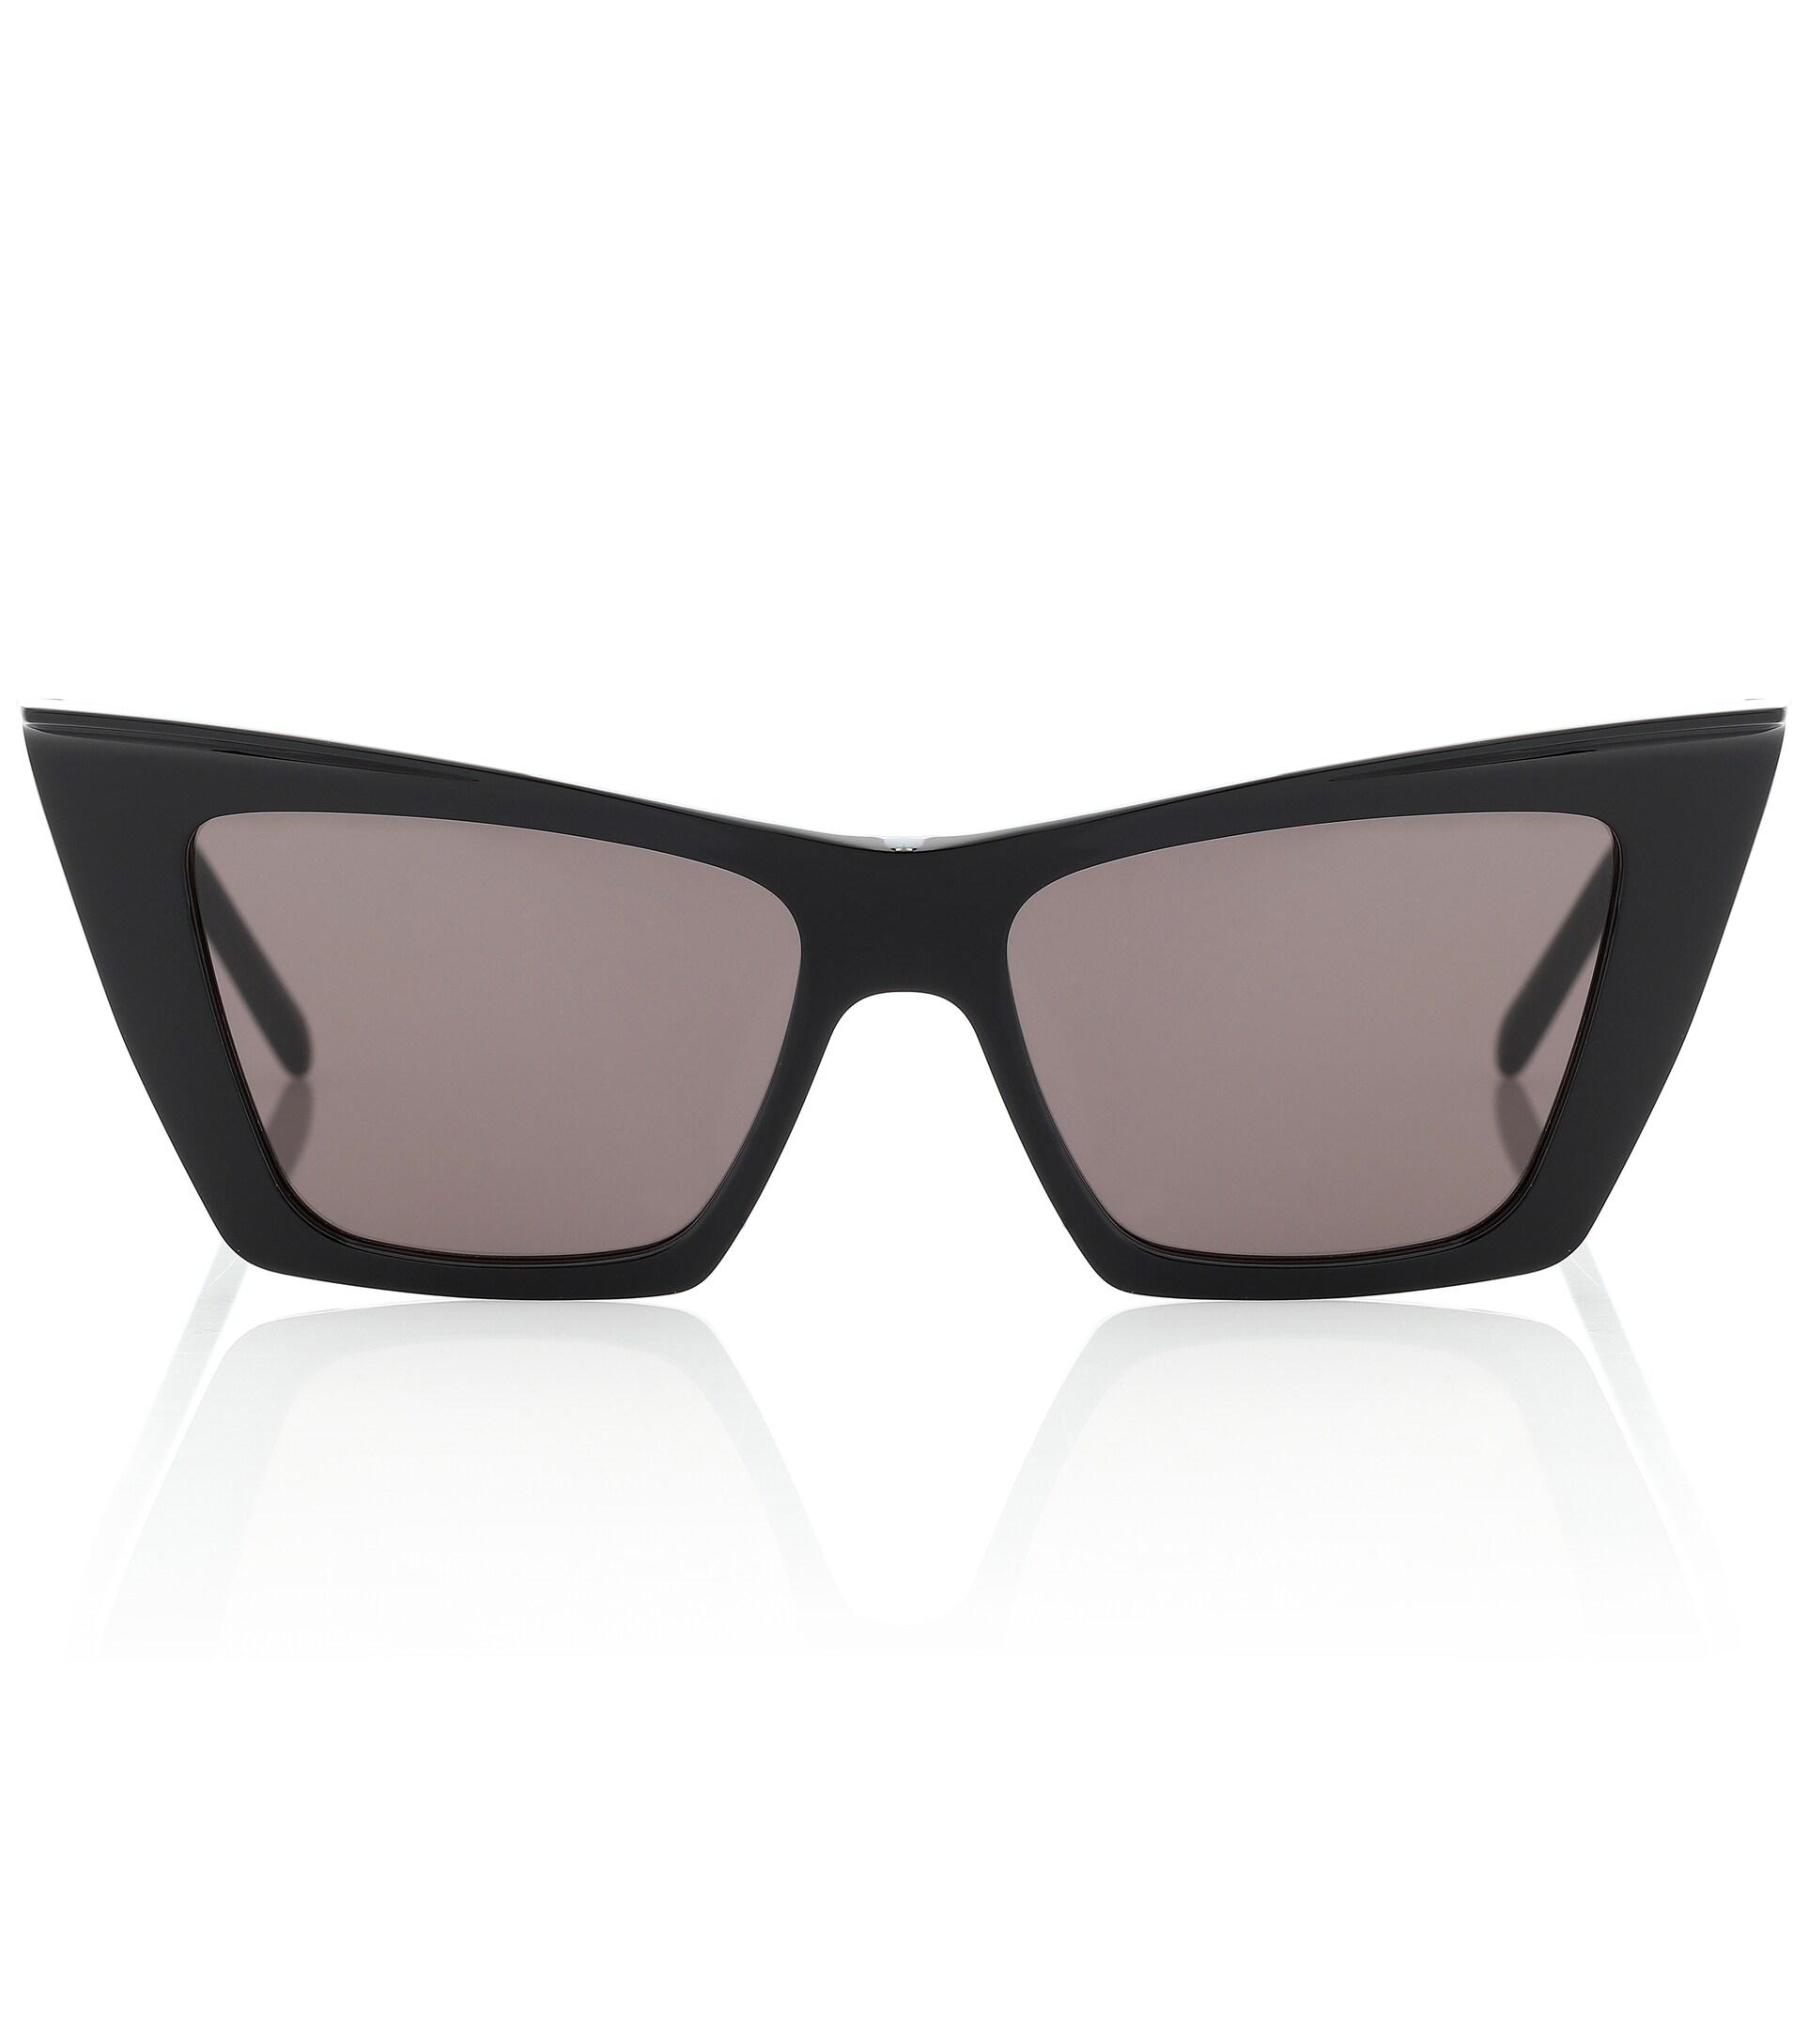 Grey Womens Sunglasses Saint Laurent Sunglasses Saint Laurent Synthetic Cat-eye Sunglasses in Black 